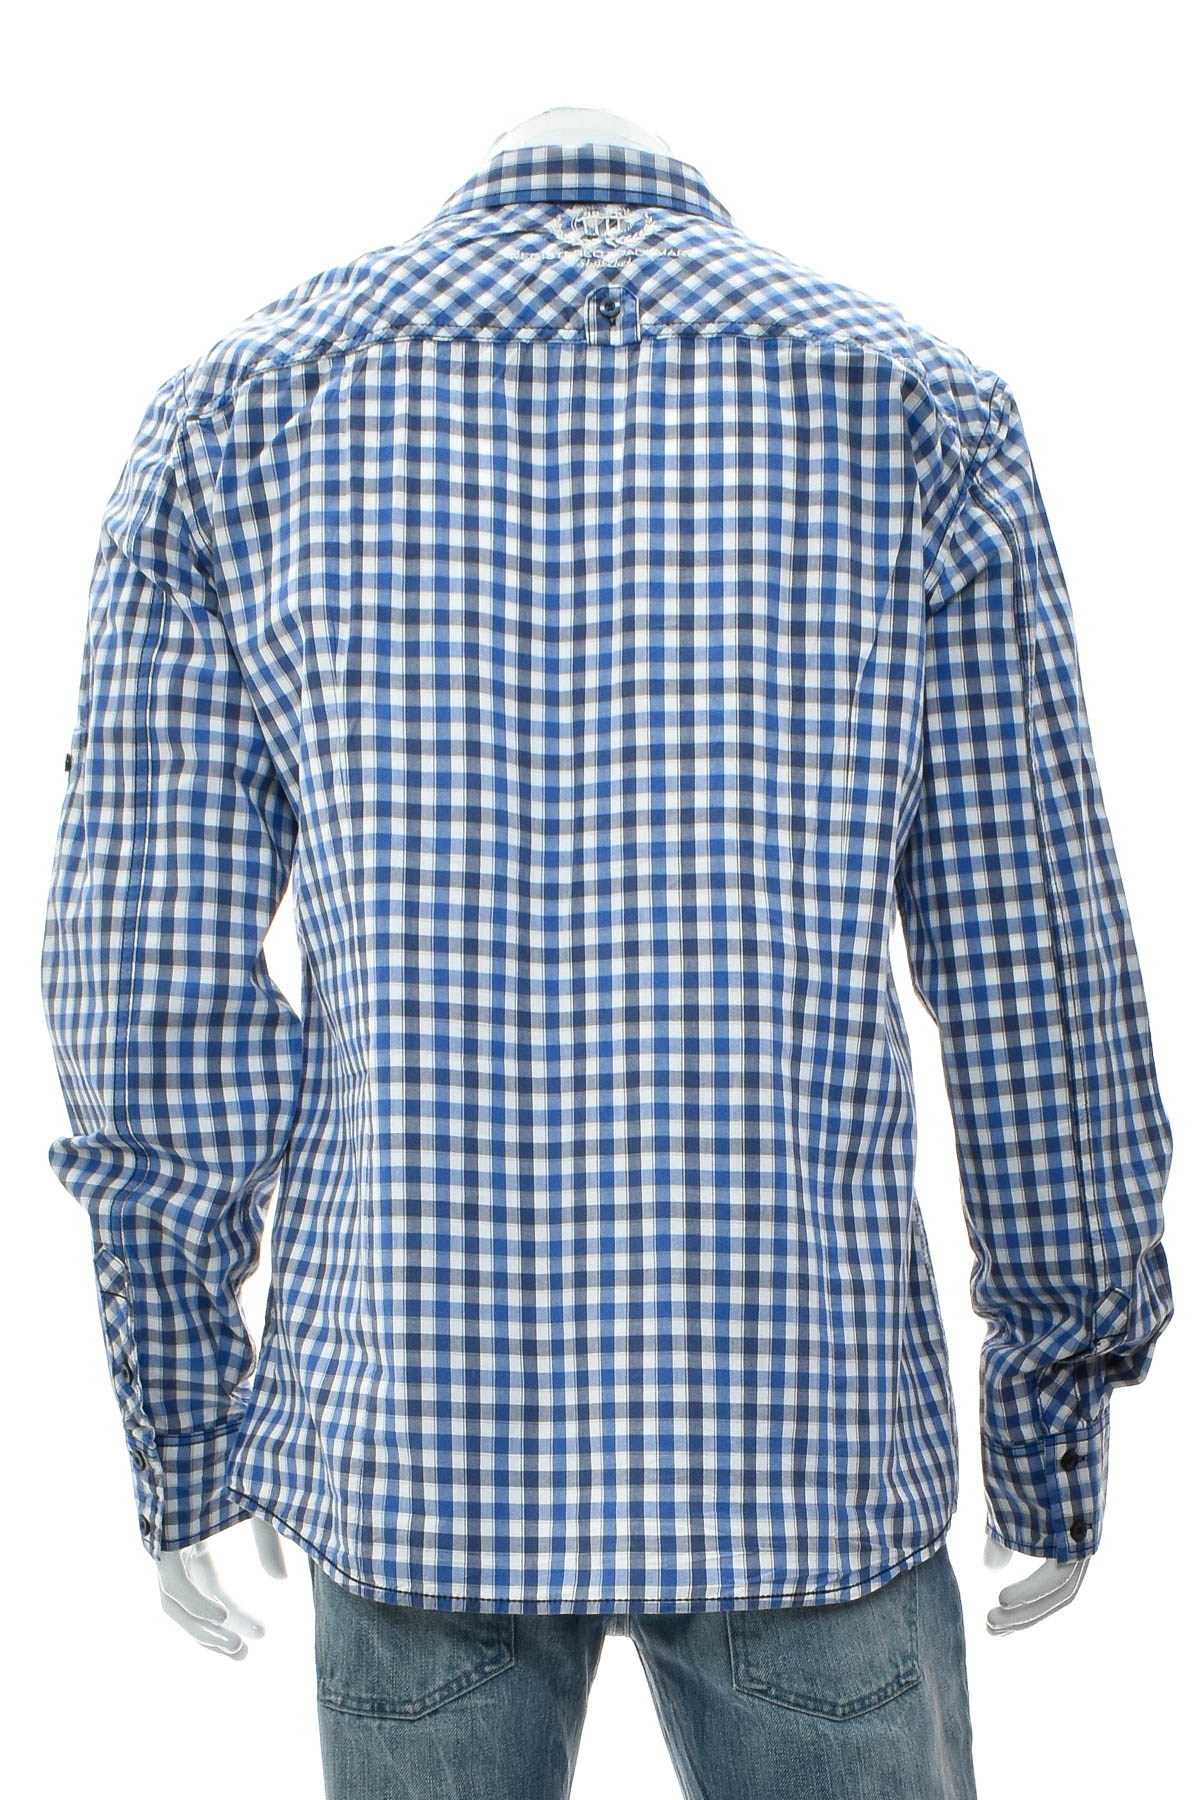 Ανδρικό πουκάμισο - 98-86 - 1